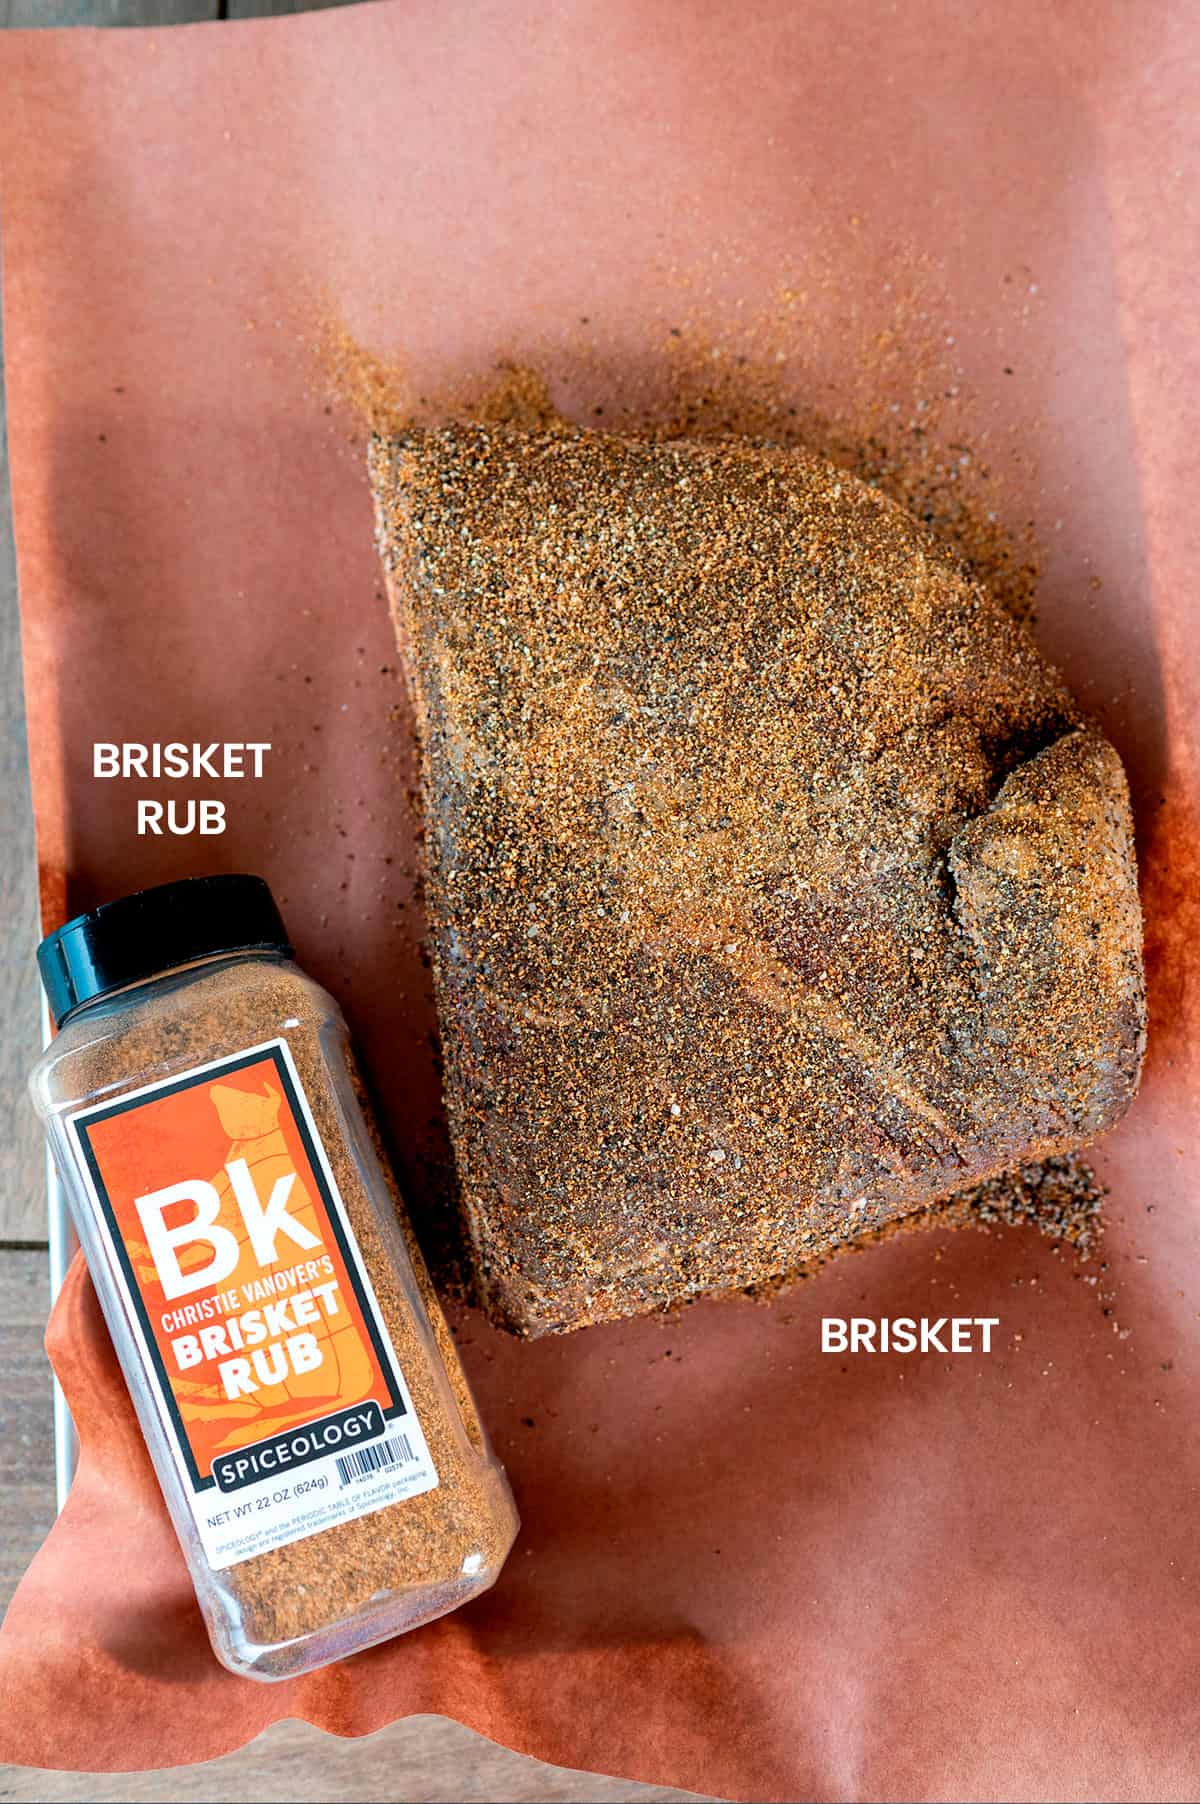 smoked brisket ingredients: brisket, brisket rub.